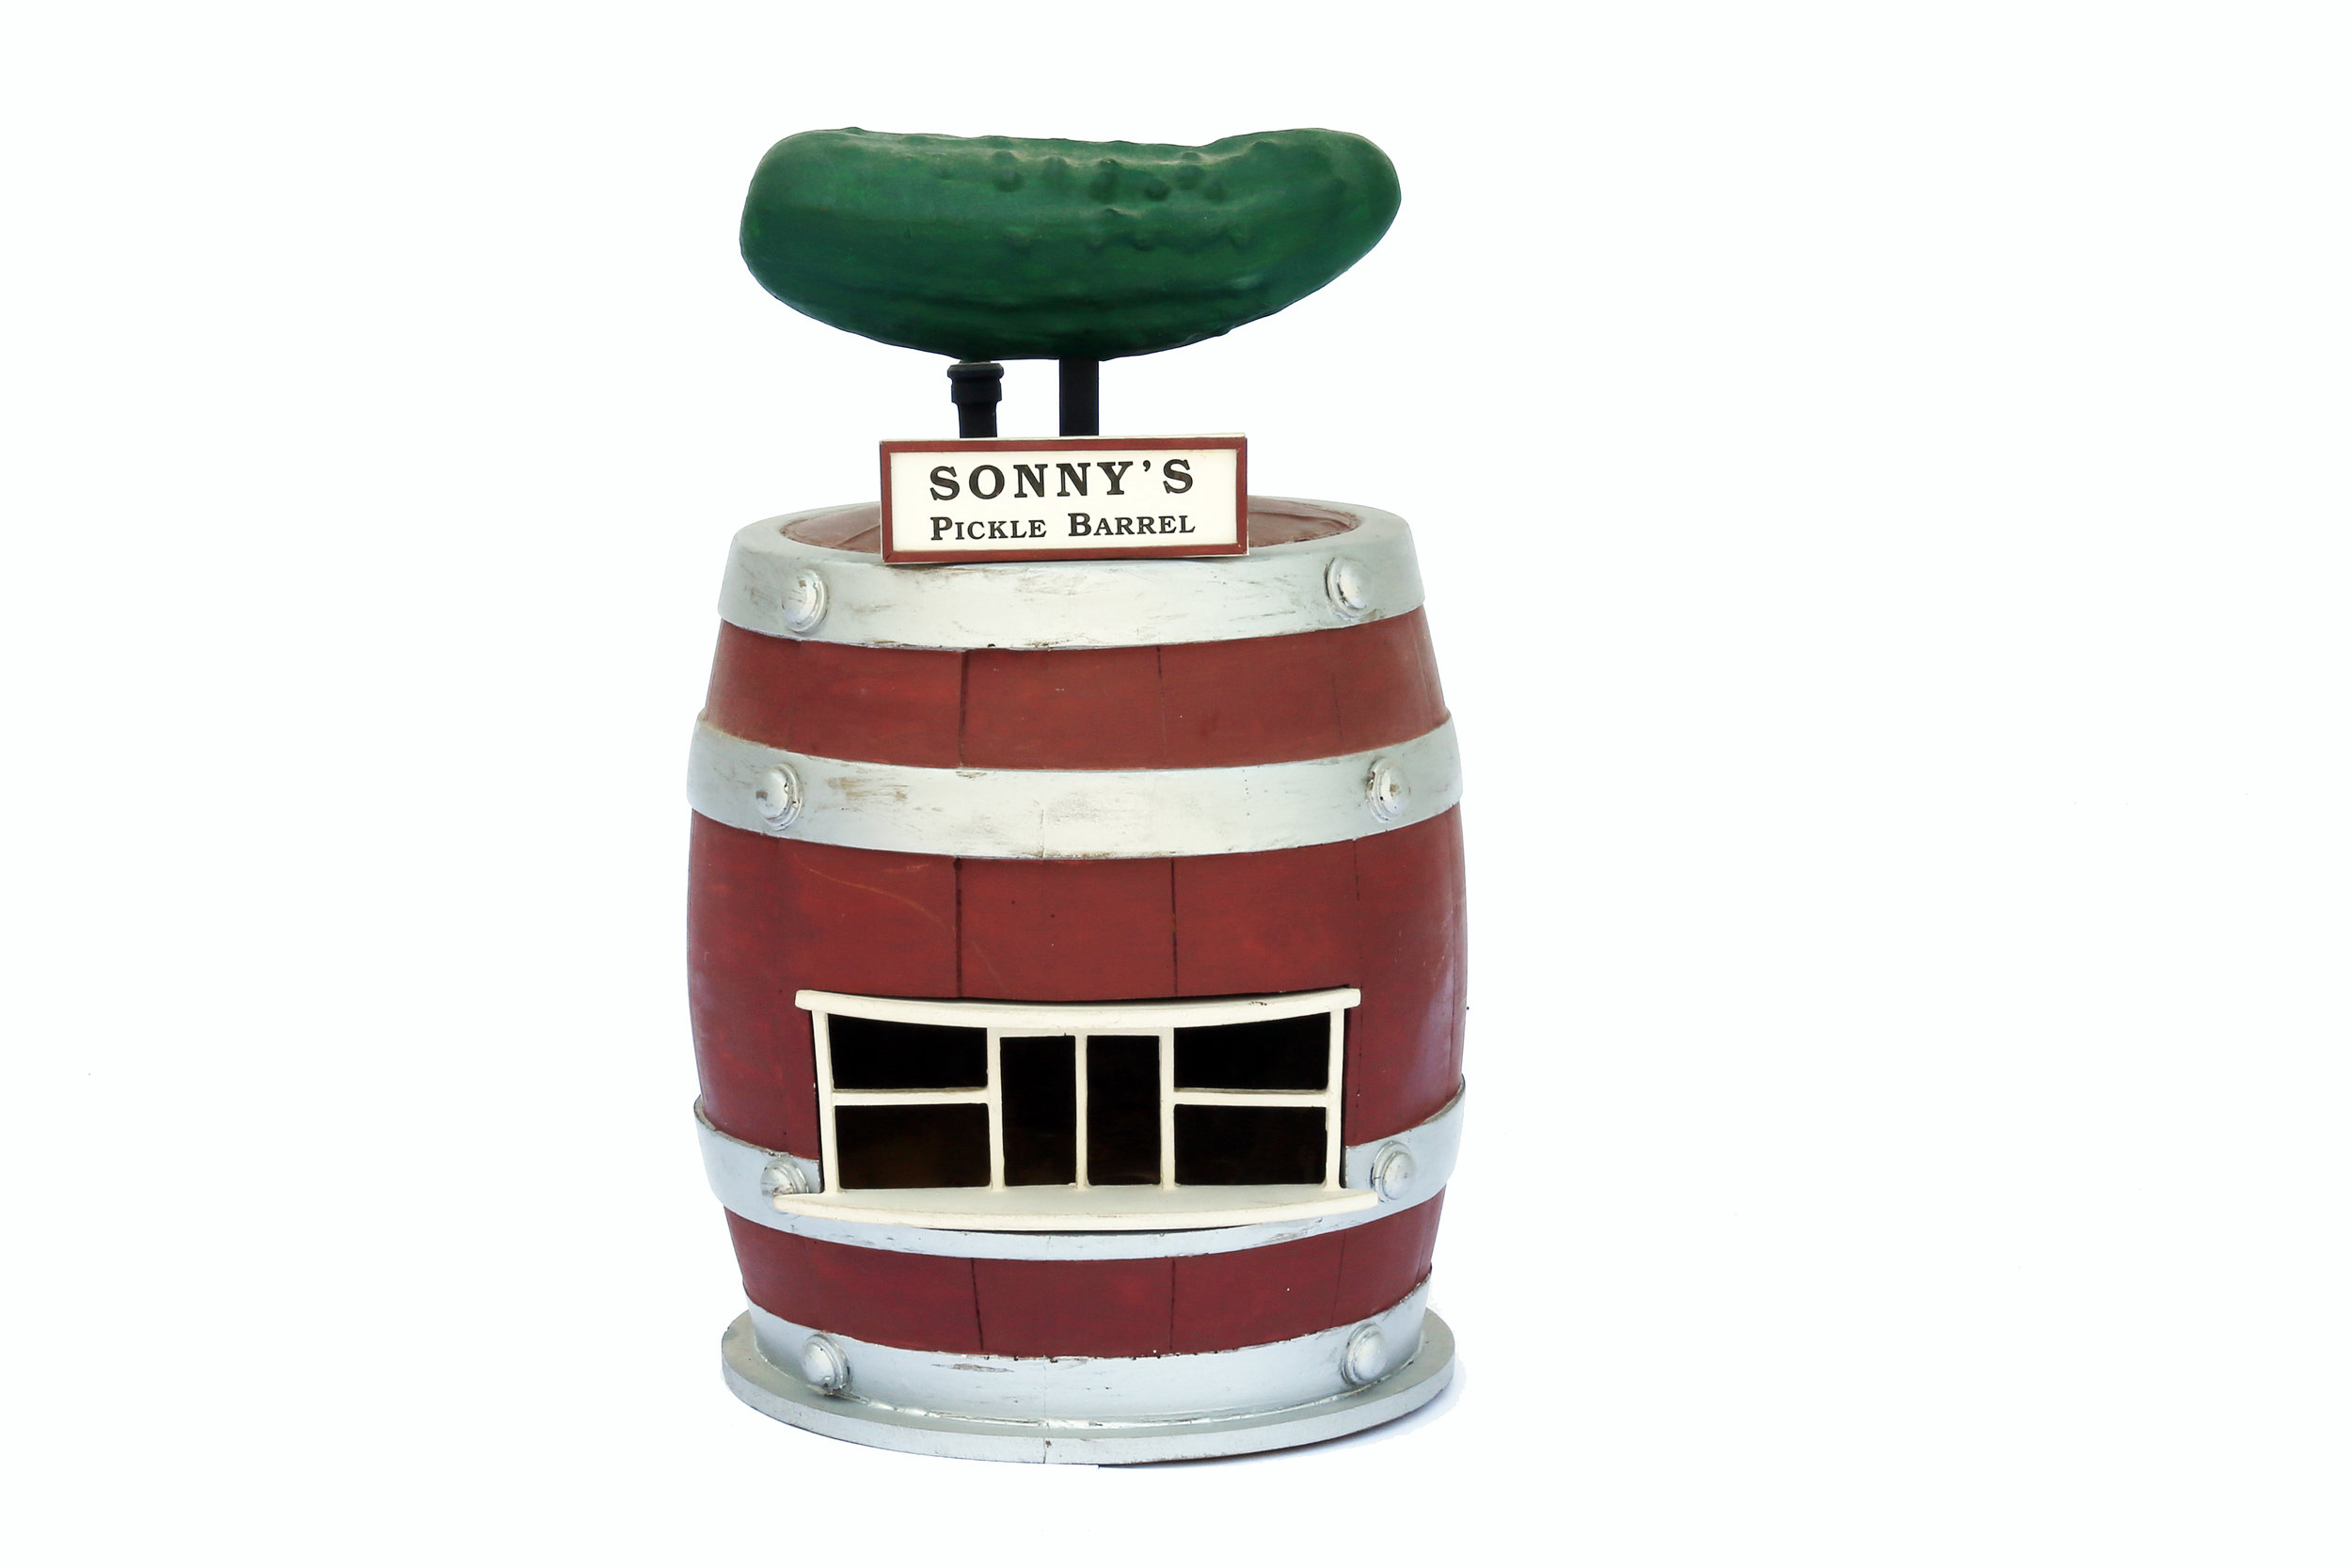 Sonny's Pickel Barrel